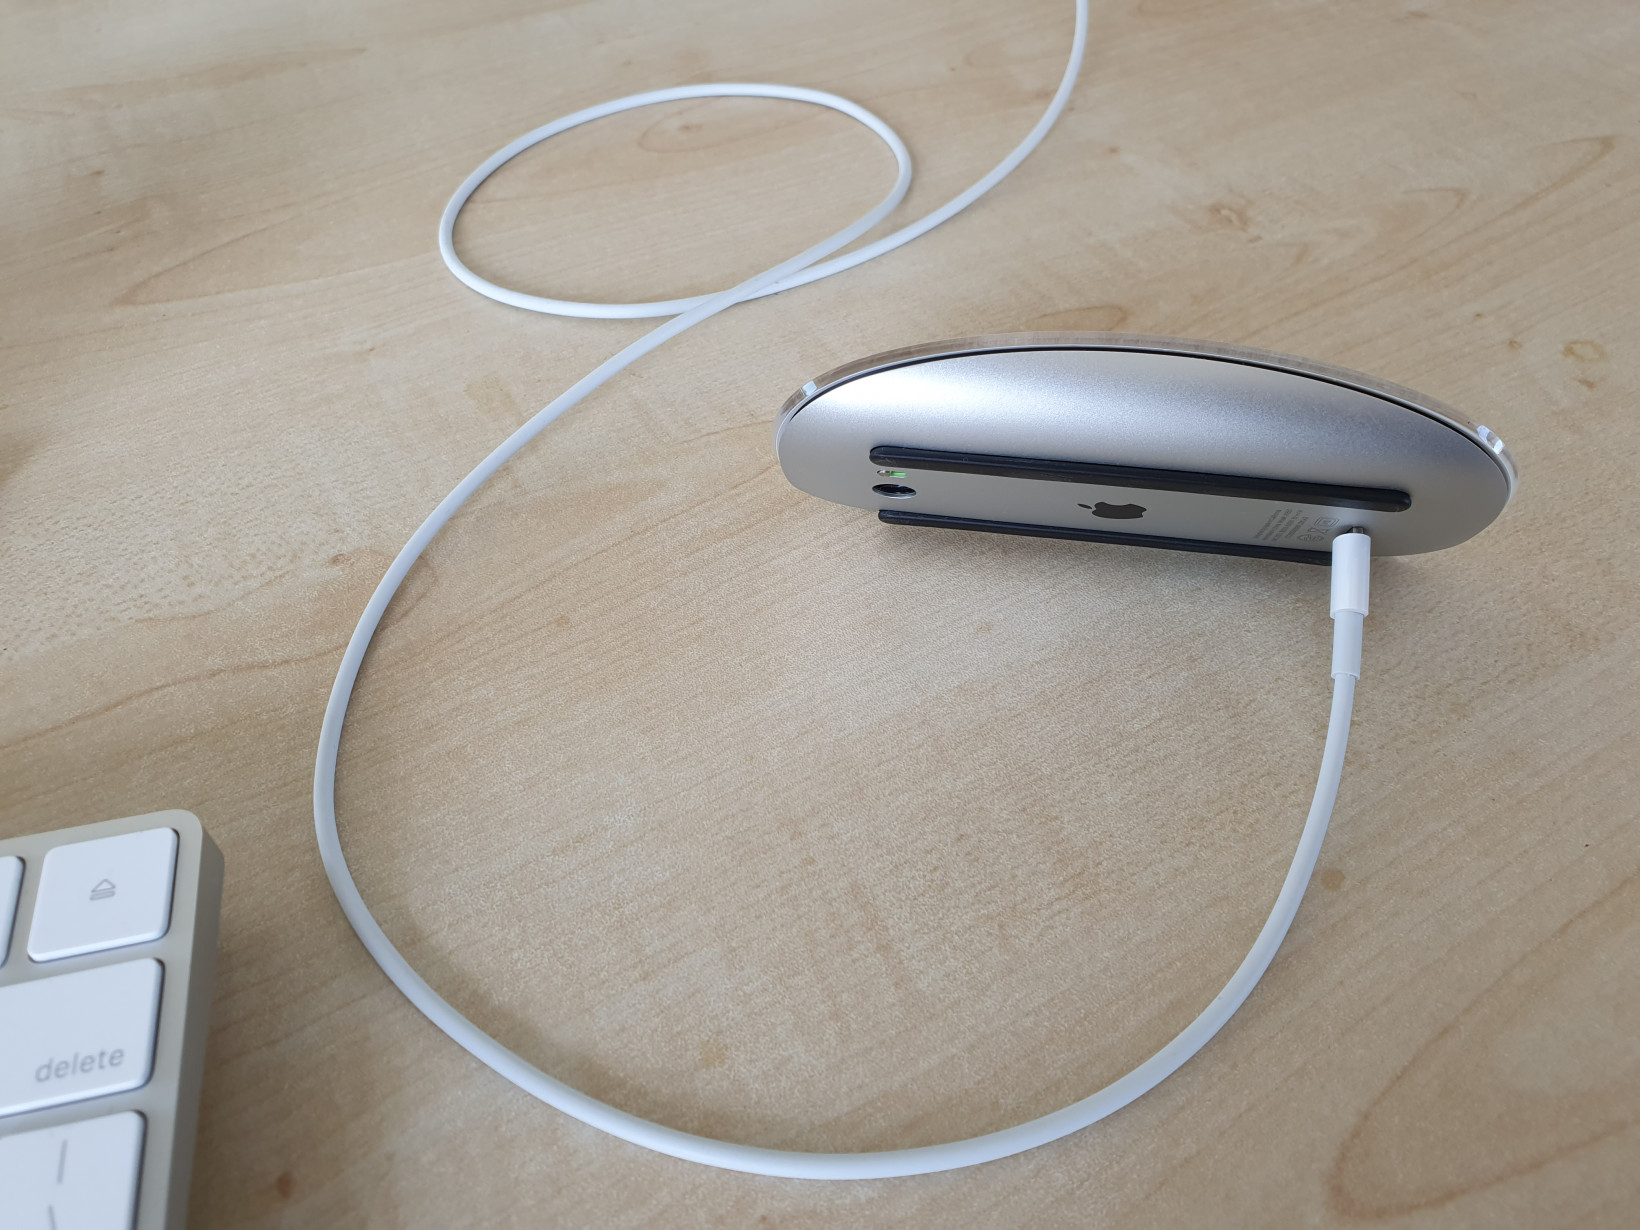 Chargement de la souris Apple Magic Mouse 2